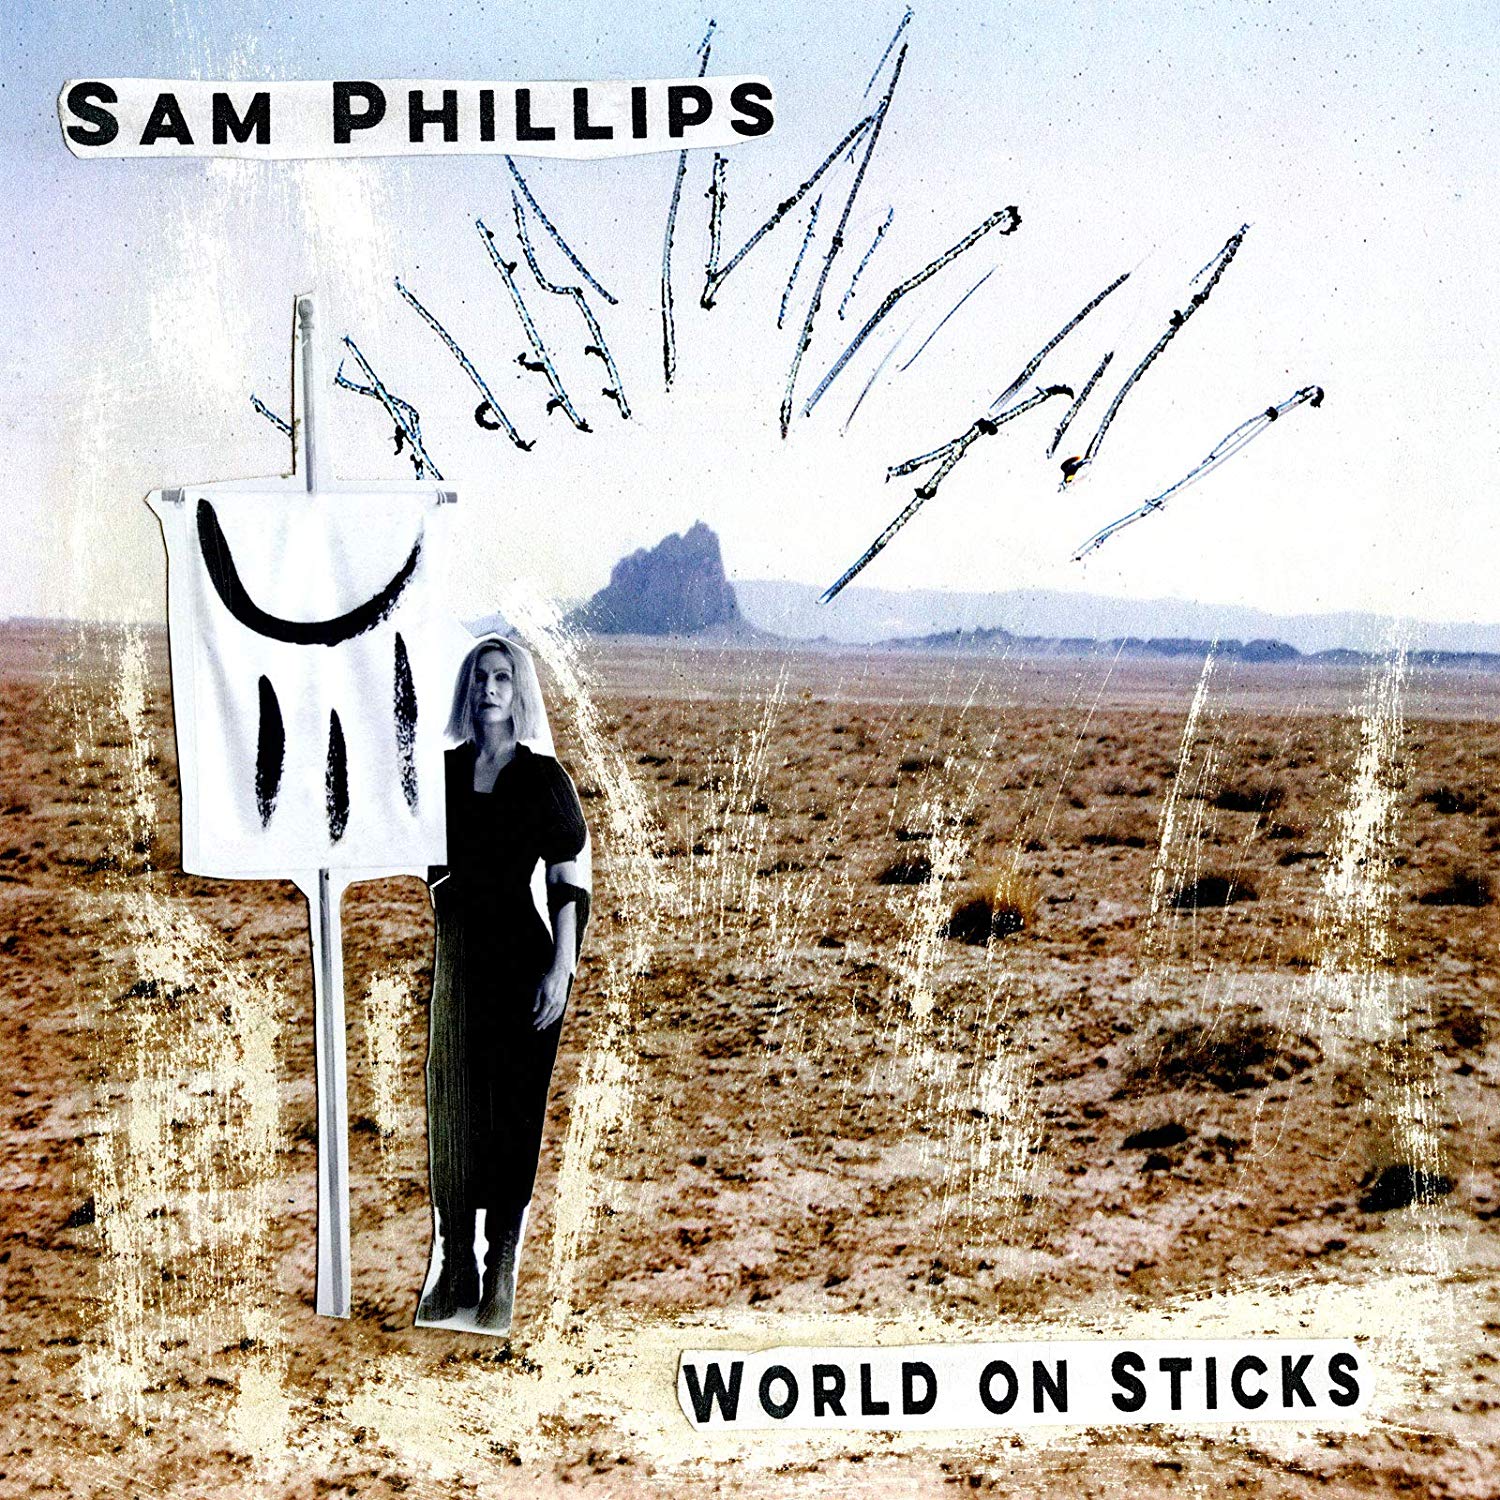 Sam Phillips - World On Sticks vinyl cover